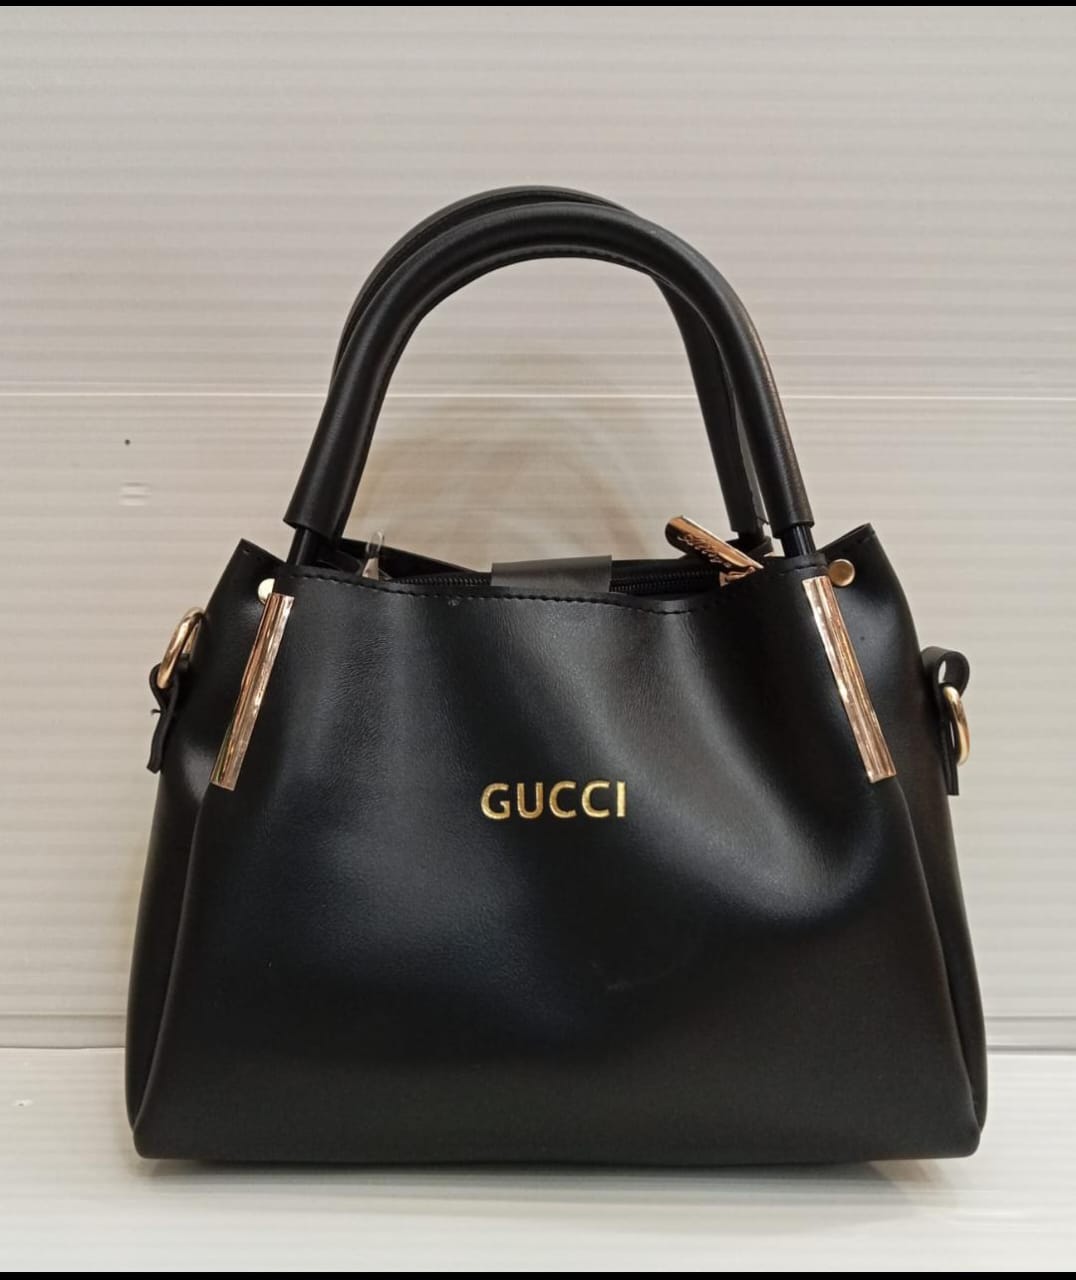 Gucci Handbags Bags - Buy Gucci Handbags Bags online in India